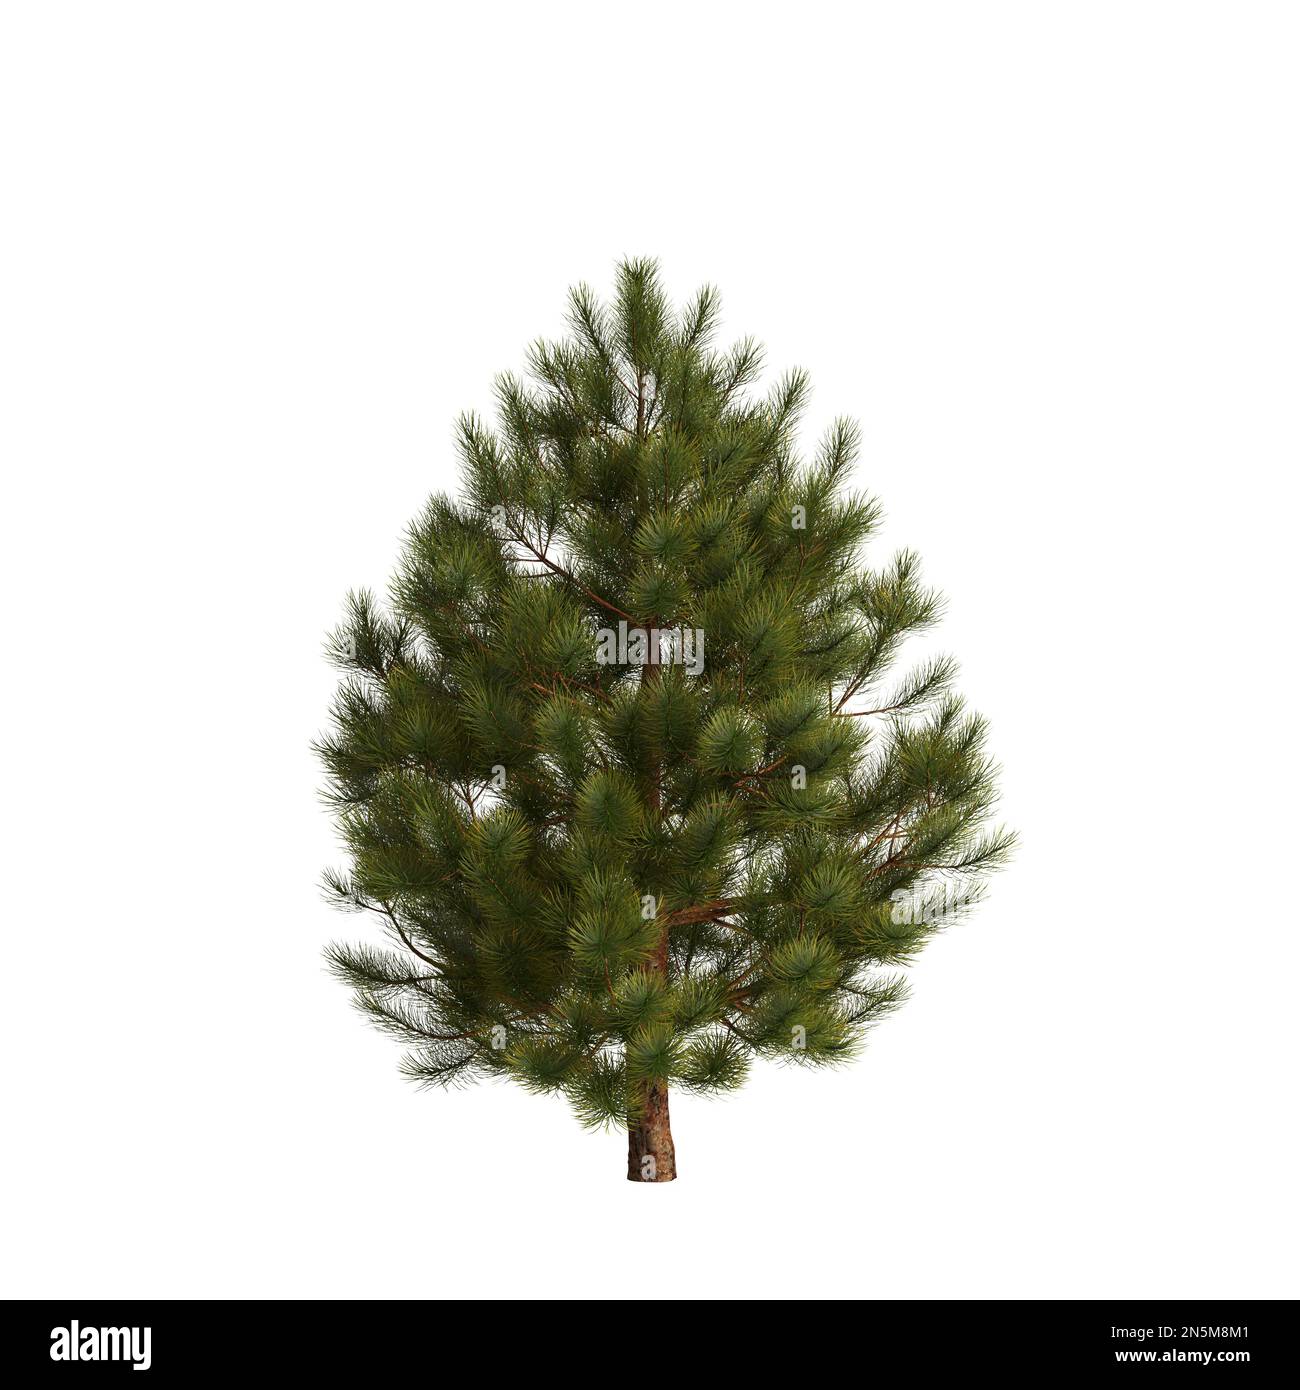 3d illustration of pinus mugo tree isolated on white background Stock Photo